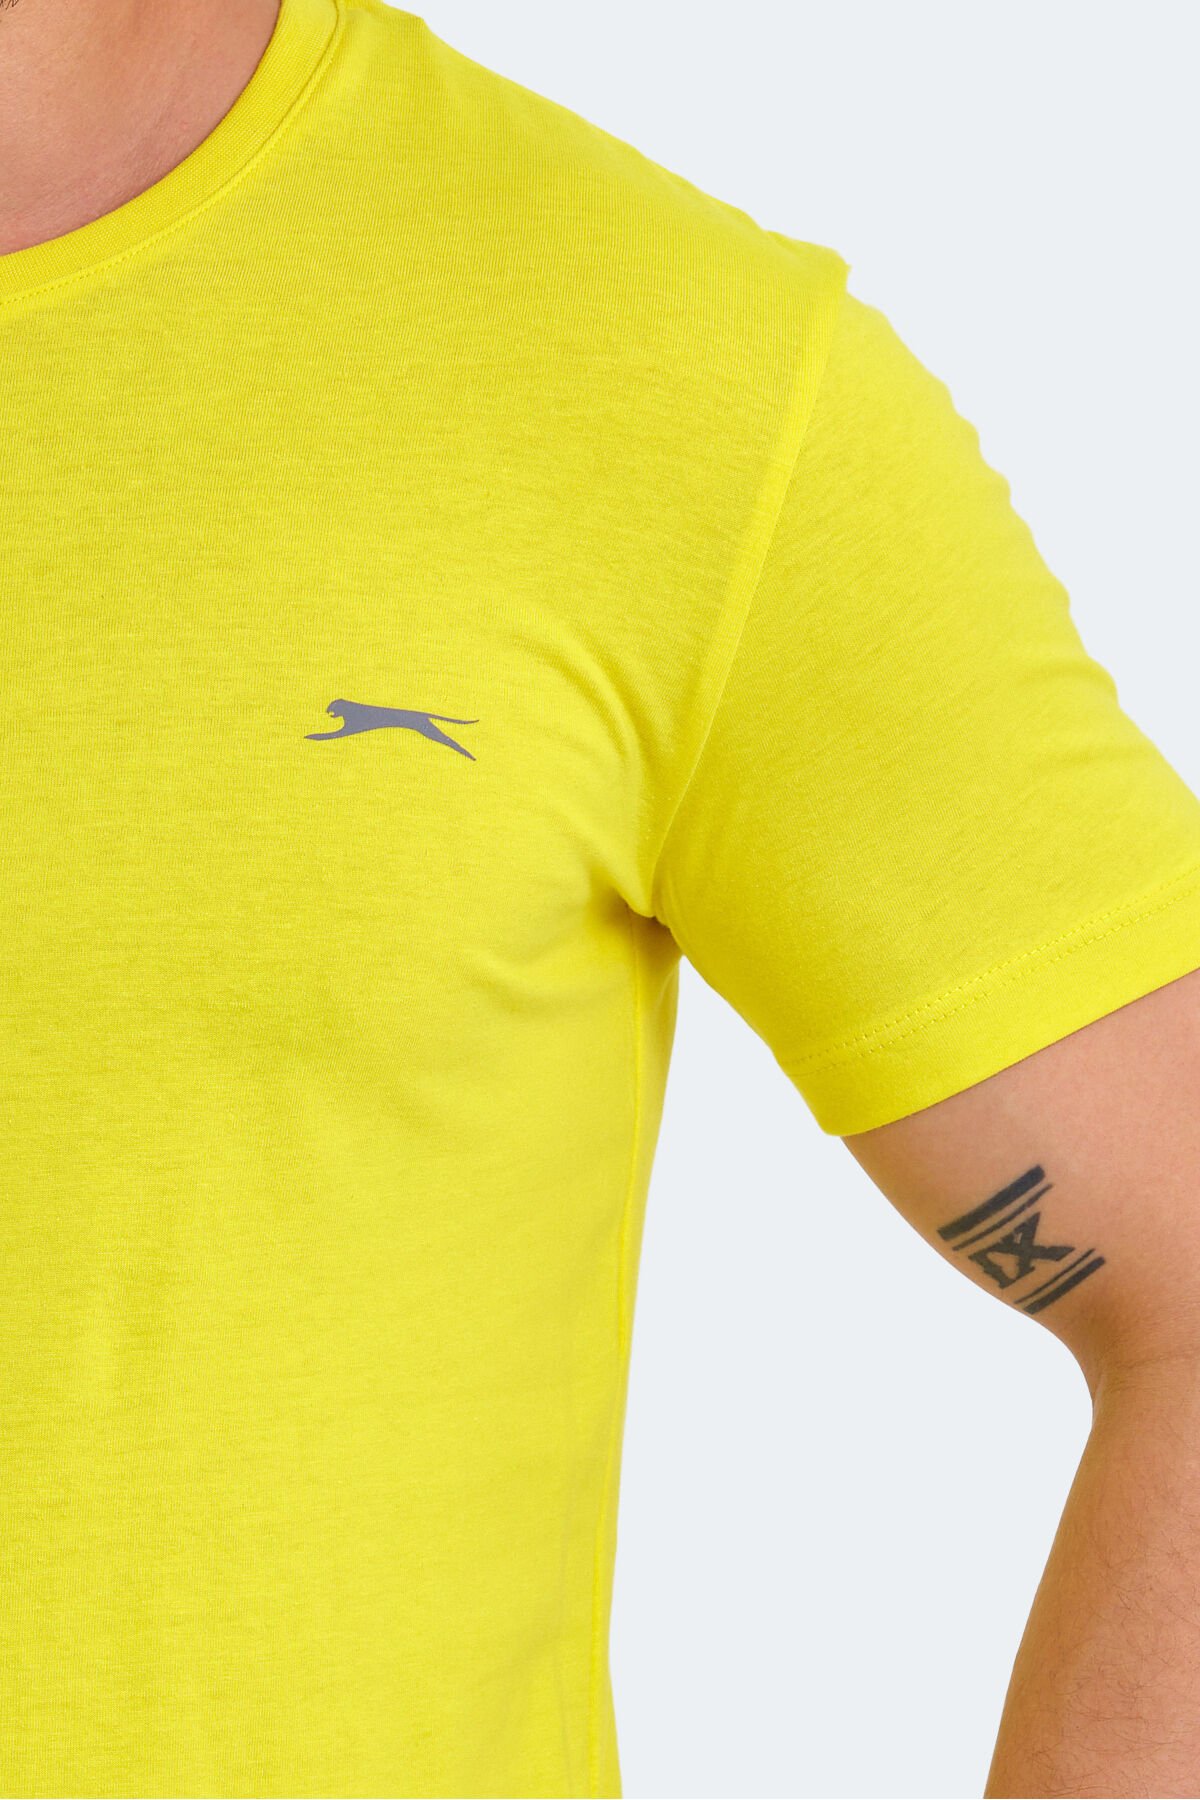 Slazenger SANDER KTN Erkek Kısa Kol T-Shirt Açık Sarı - Thumbnail